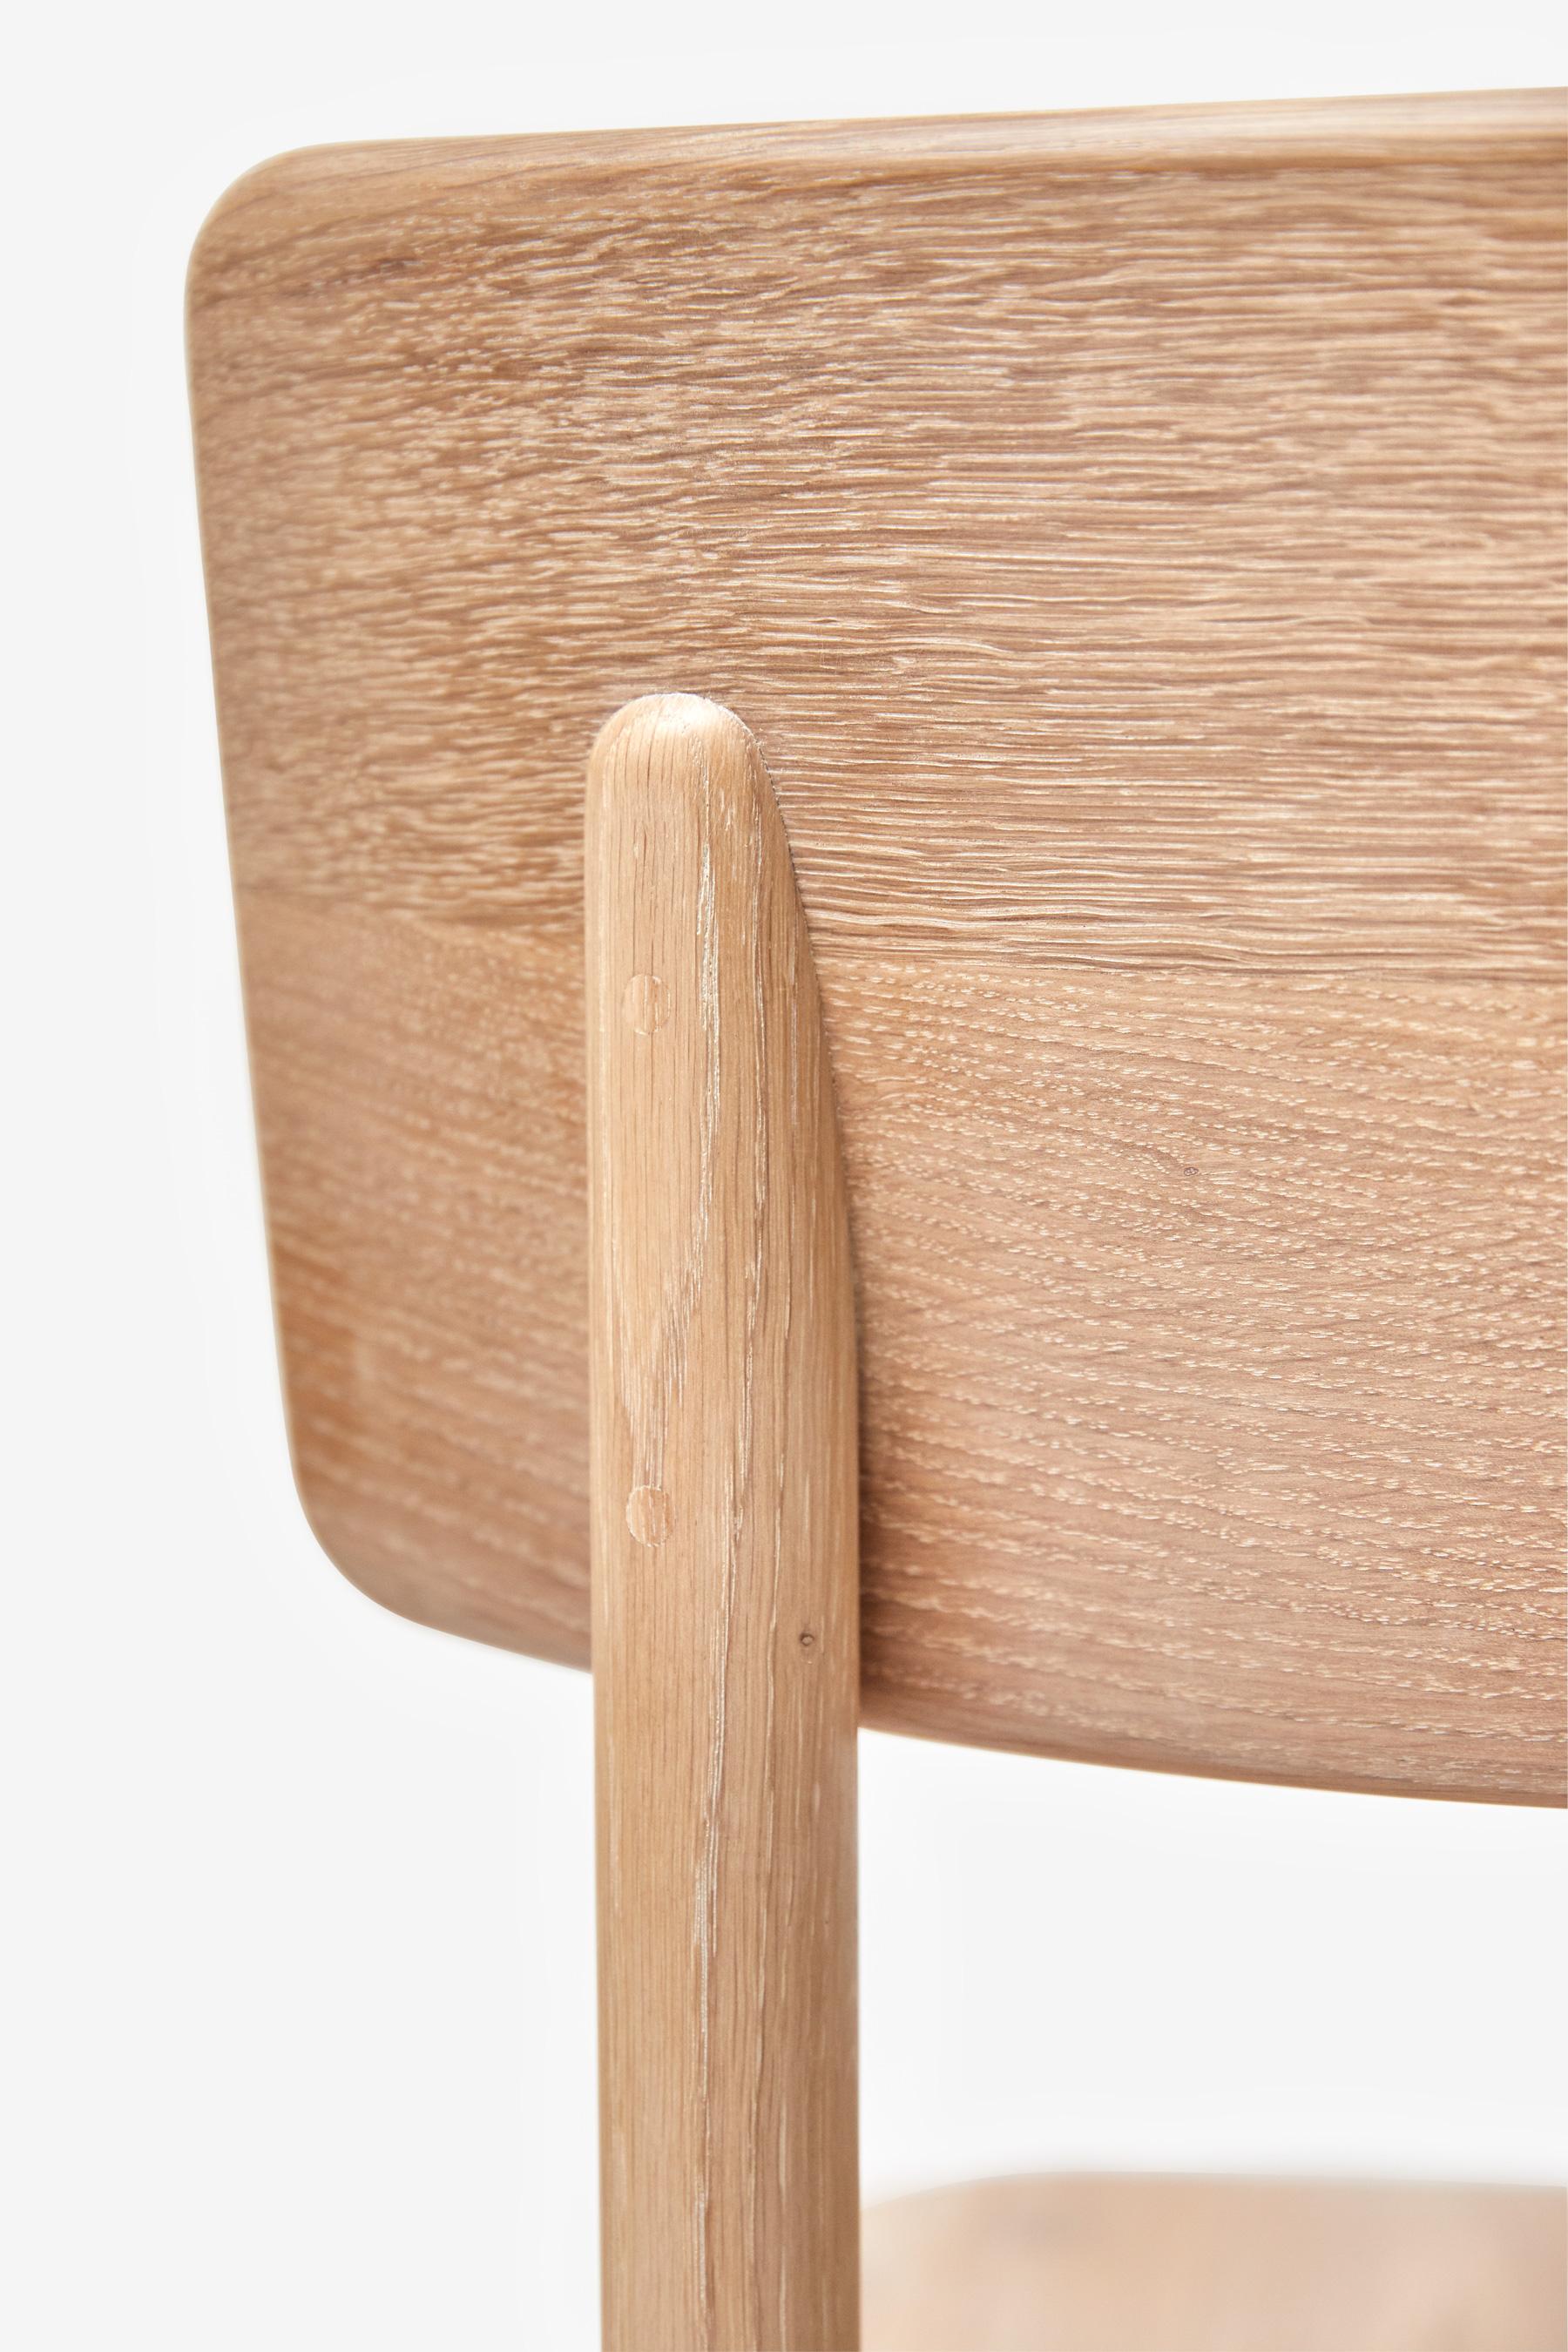 MG101 Dining chair in light oak by Malte Gormsen Design by Space Copenhagen For Sale 1